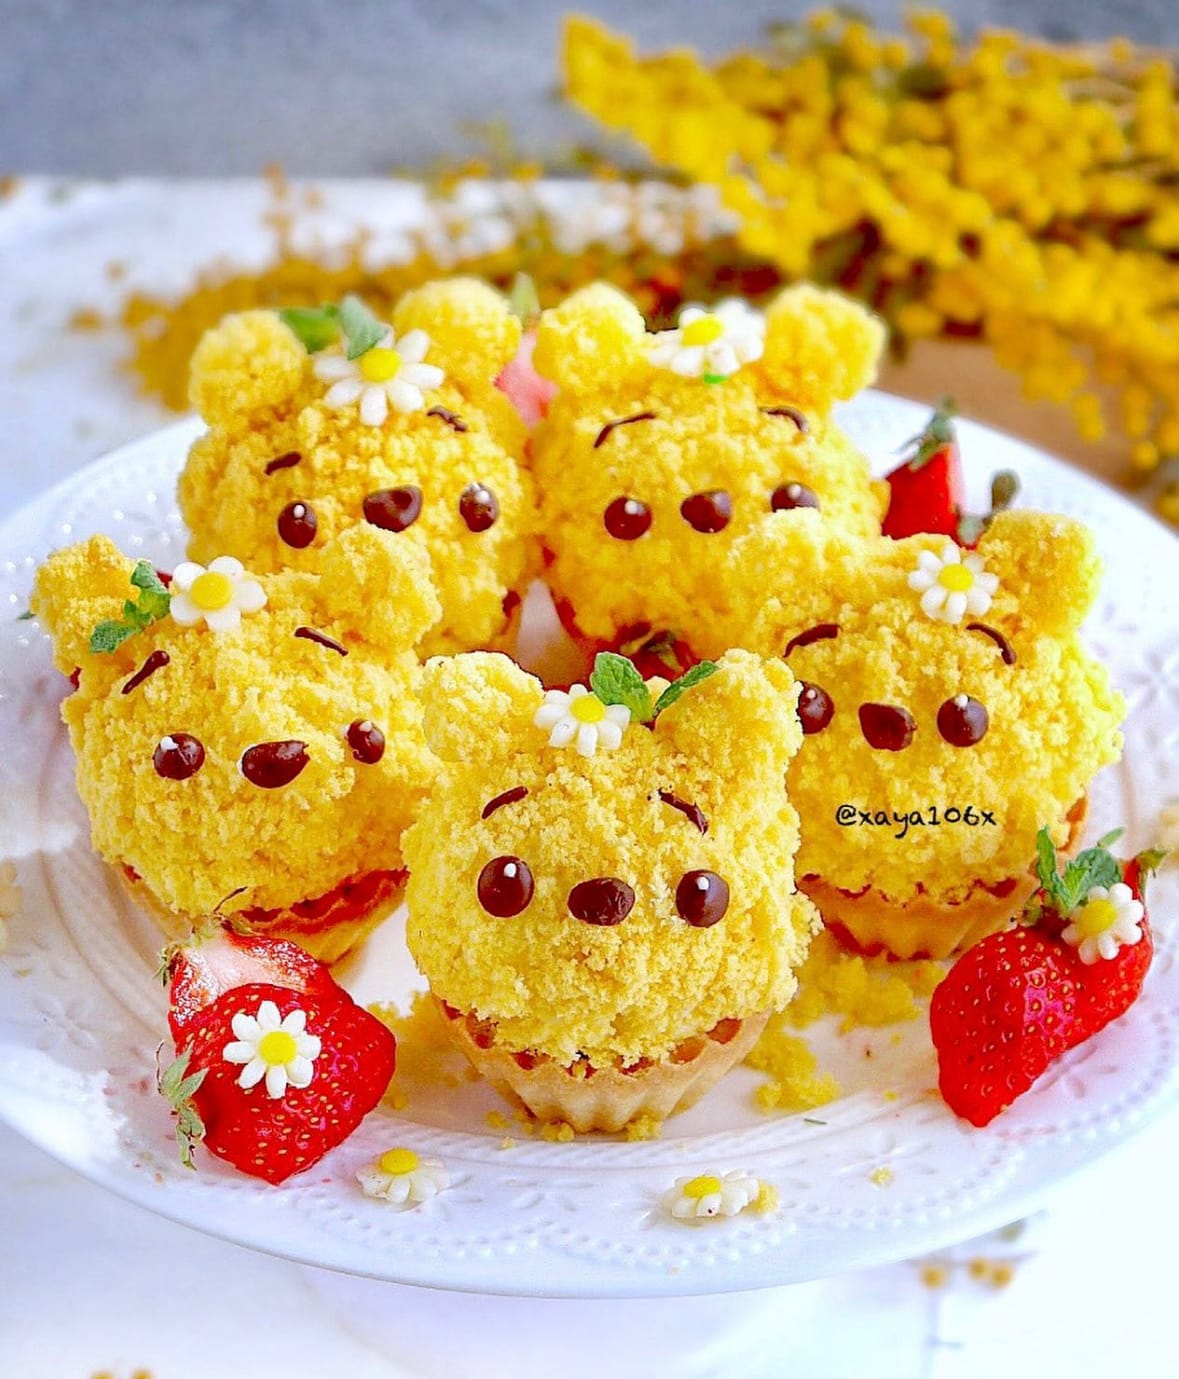 ไอเดียแต่งจานอาหาร ของหวาน ขนม หมีพูห์ Winnie the Pooh